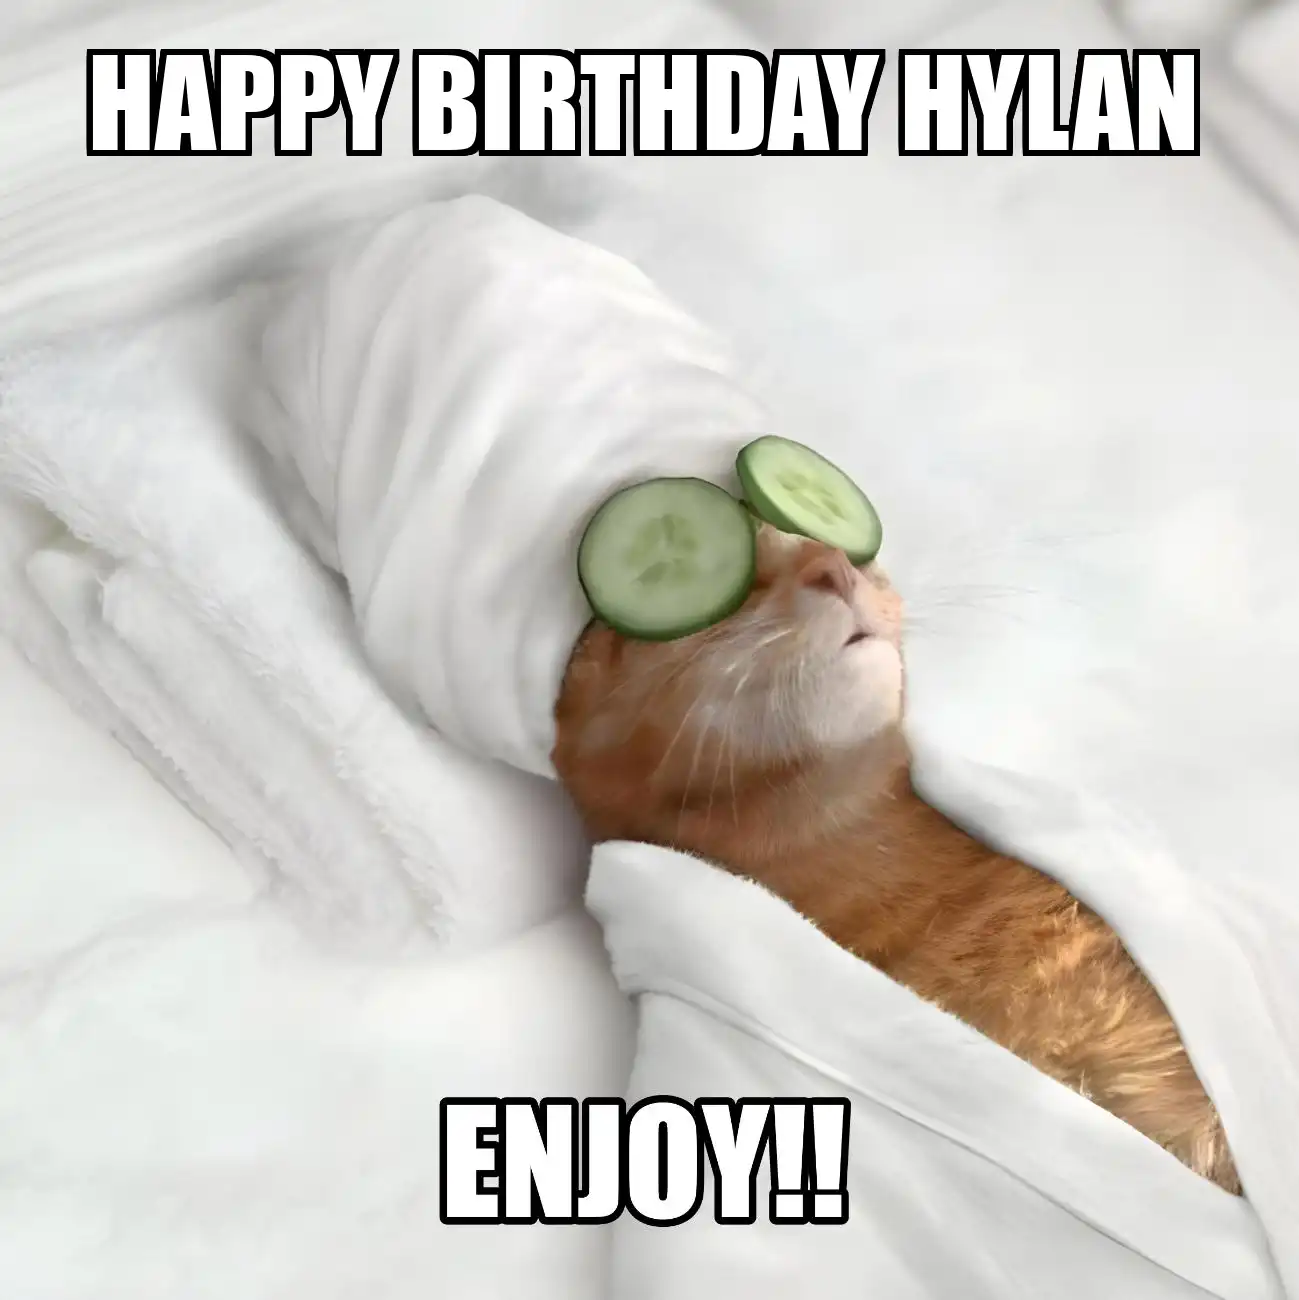 Happy Birthday Hylan Enjoy Cat Meme